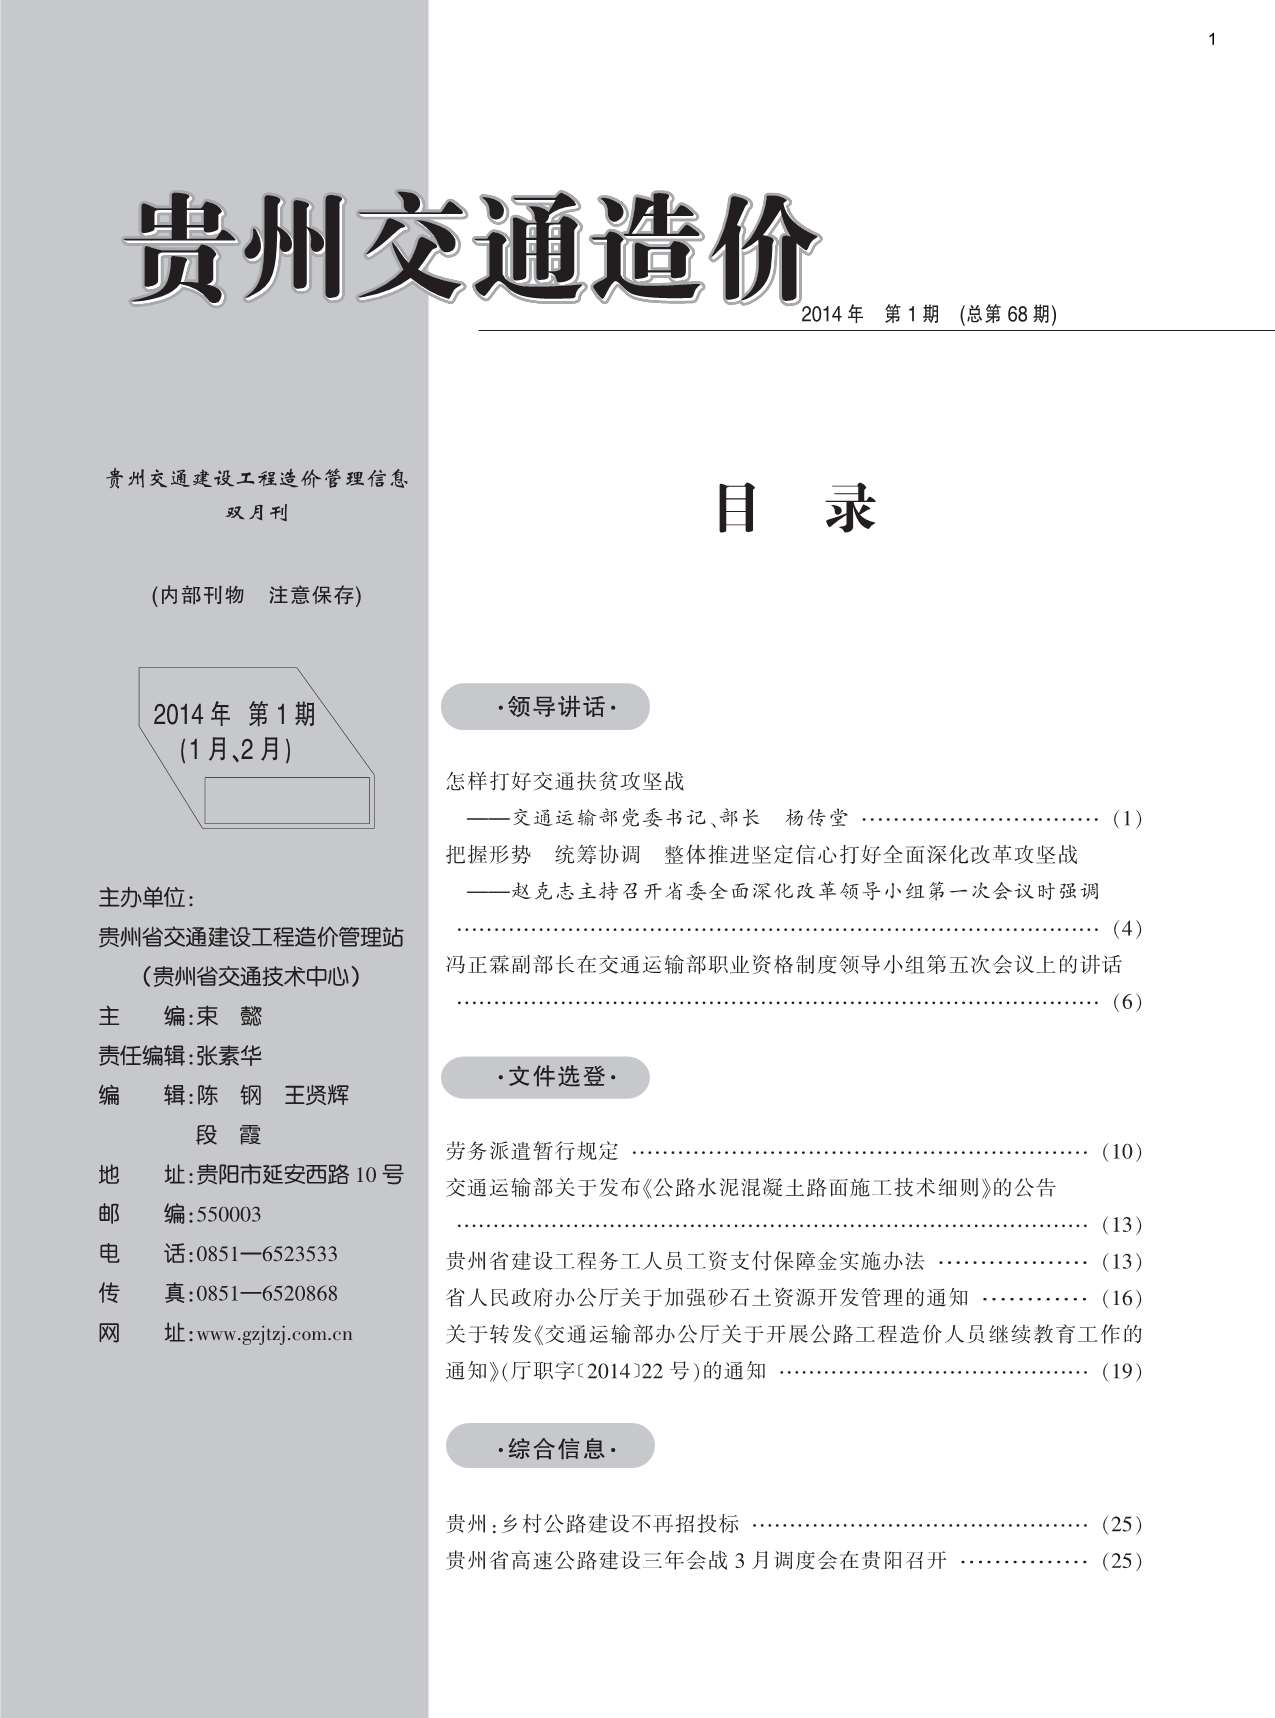 贵州省2014年1月交通建设工程造价管理信息造价库信息价